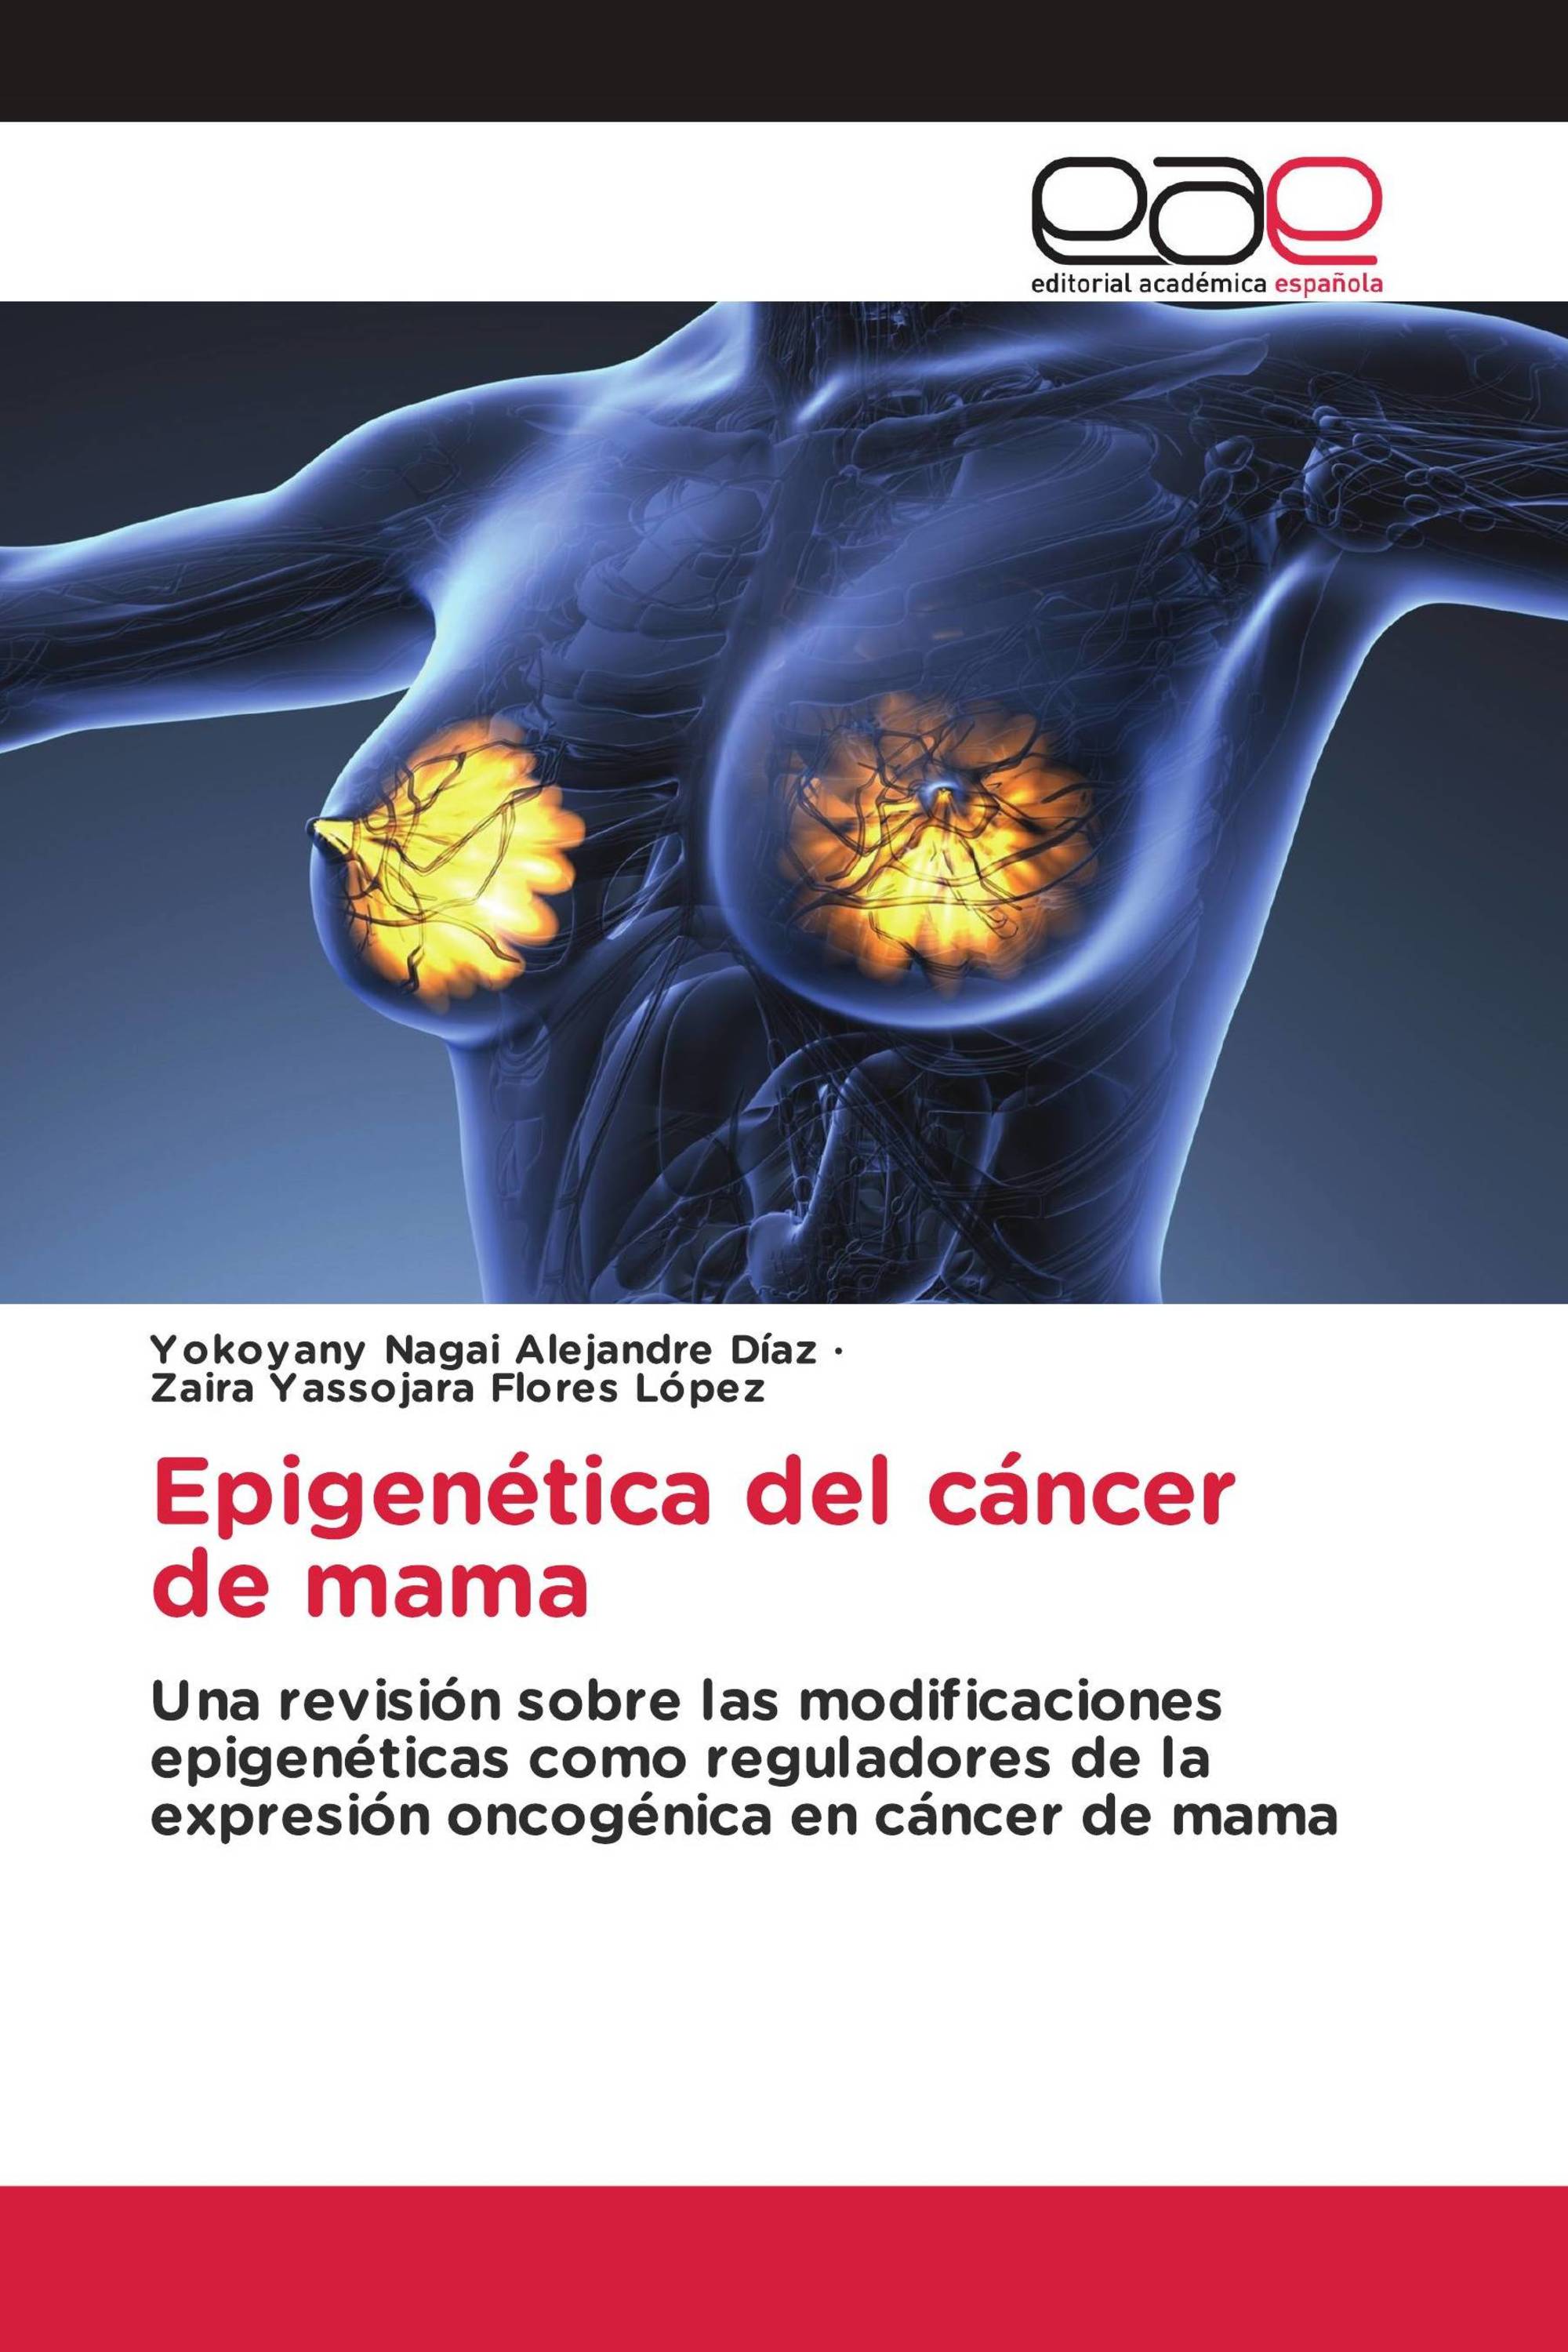 Epigenética del cáncer de mama